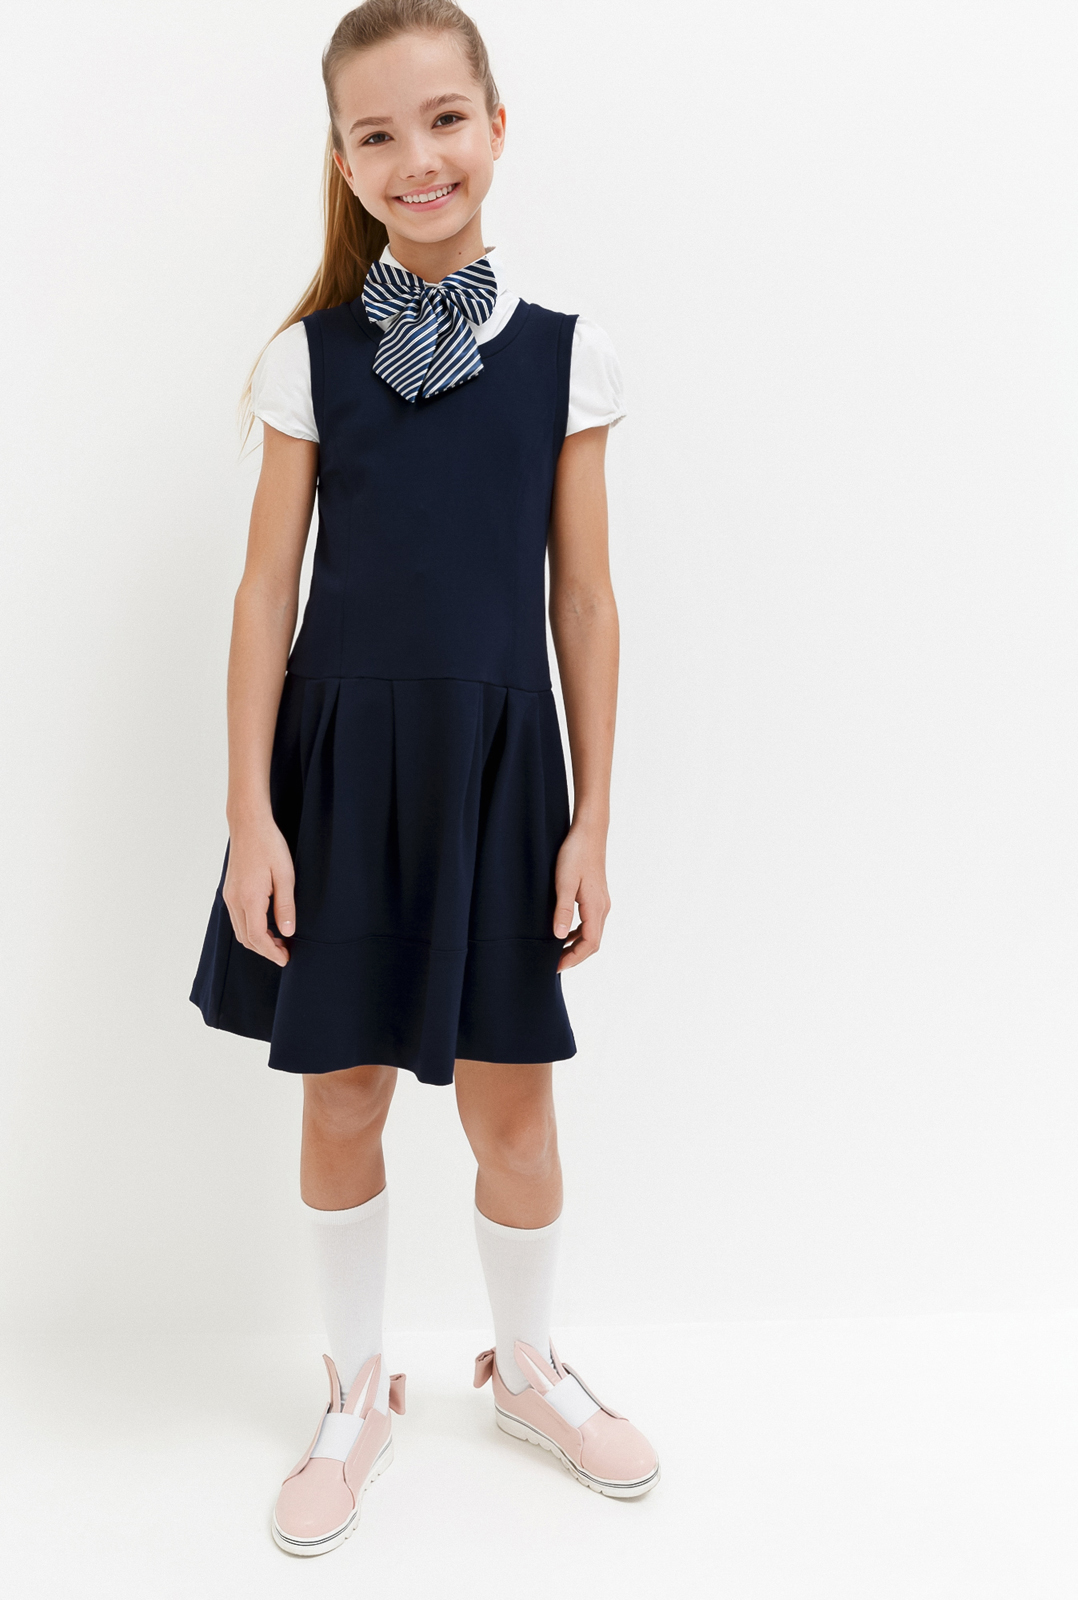 Платье для девочки Acoola Columbine, цвет: темно-голубой. 20240200028_600. Размер 164